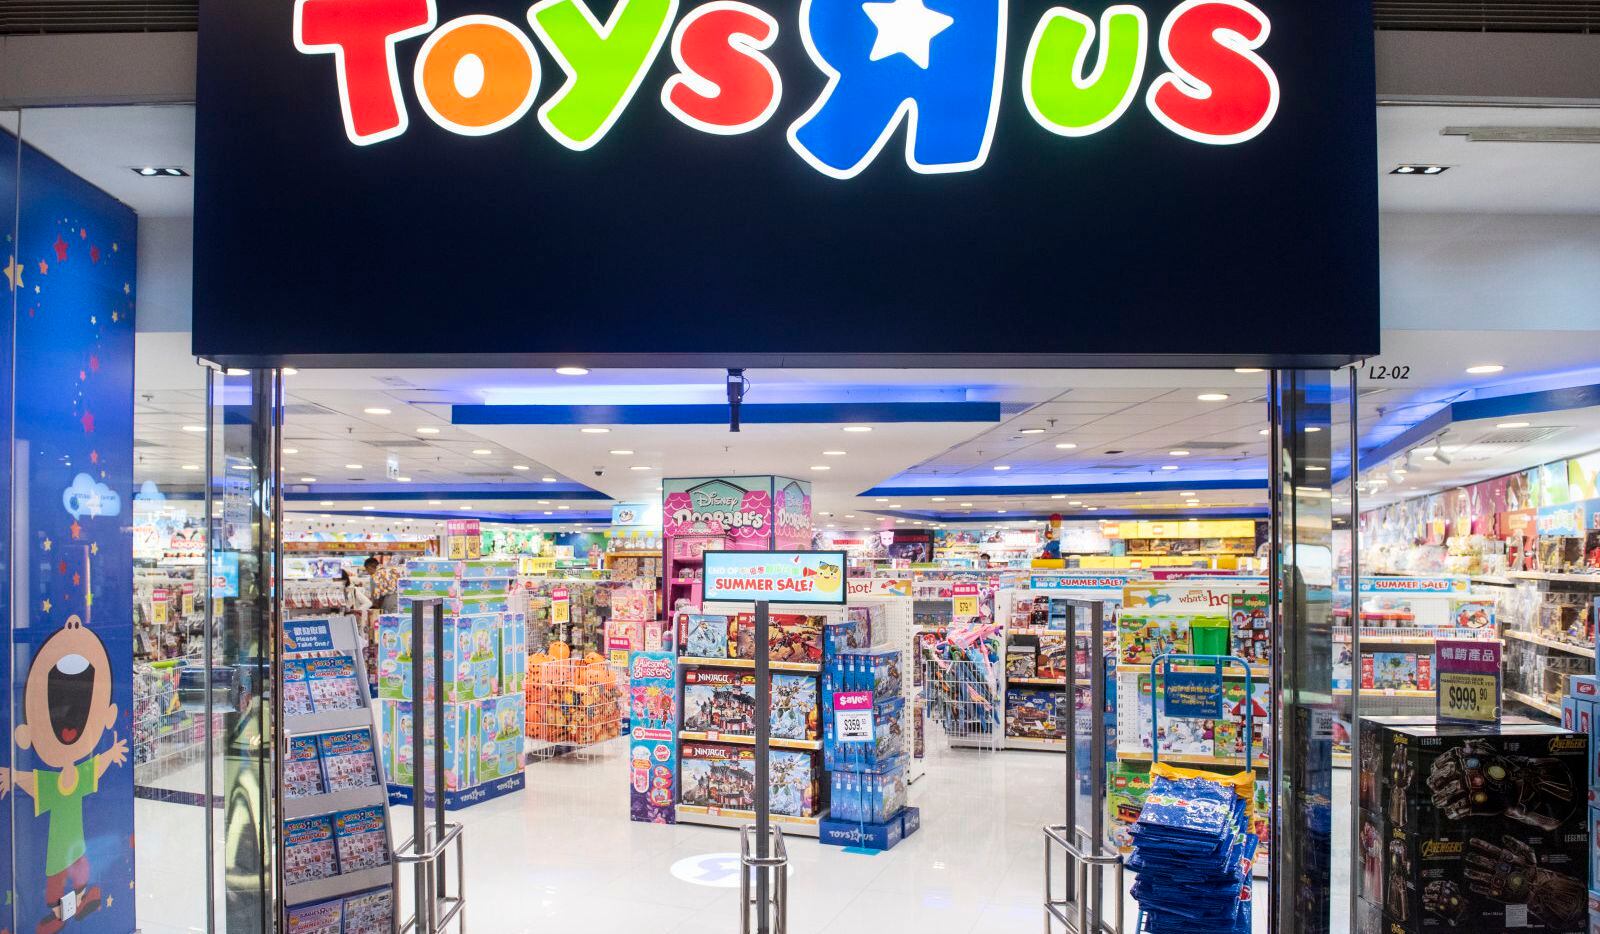 imán Gracias Malawi Toys R Us volverá a vender juguetes pero dentro de las tiendas Target